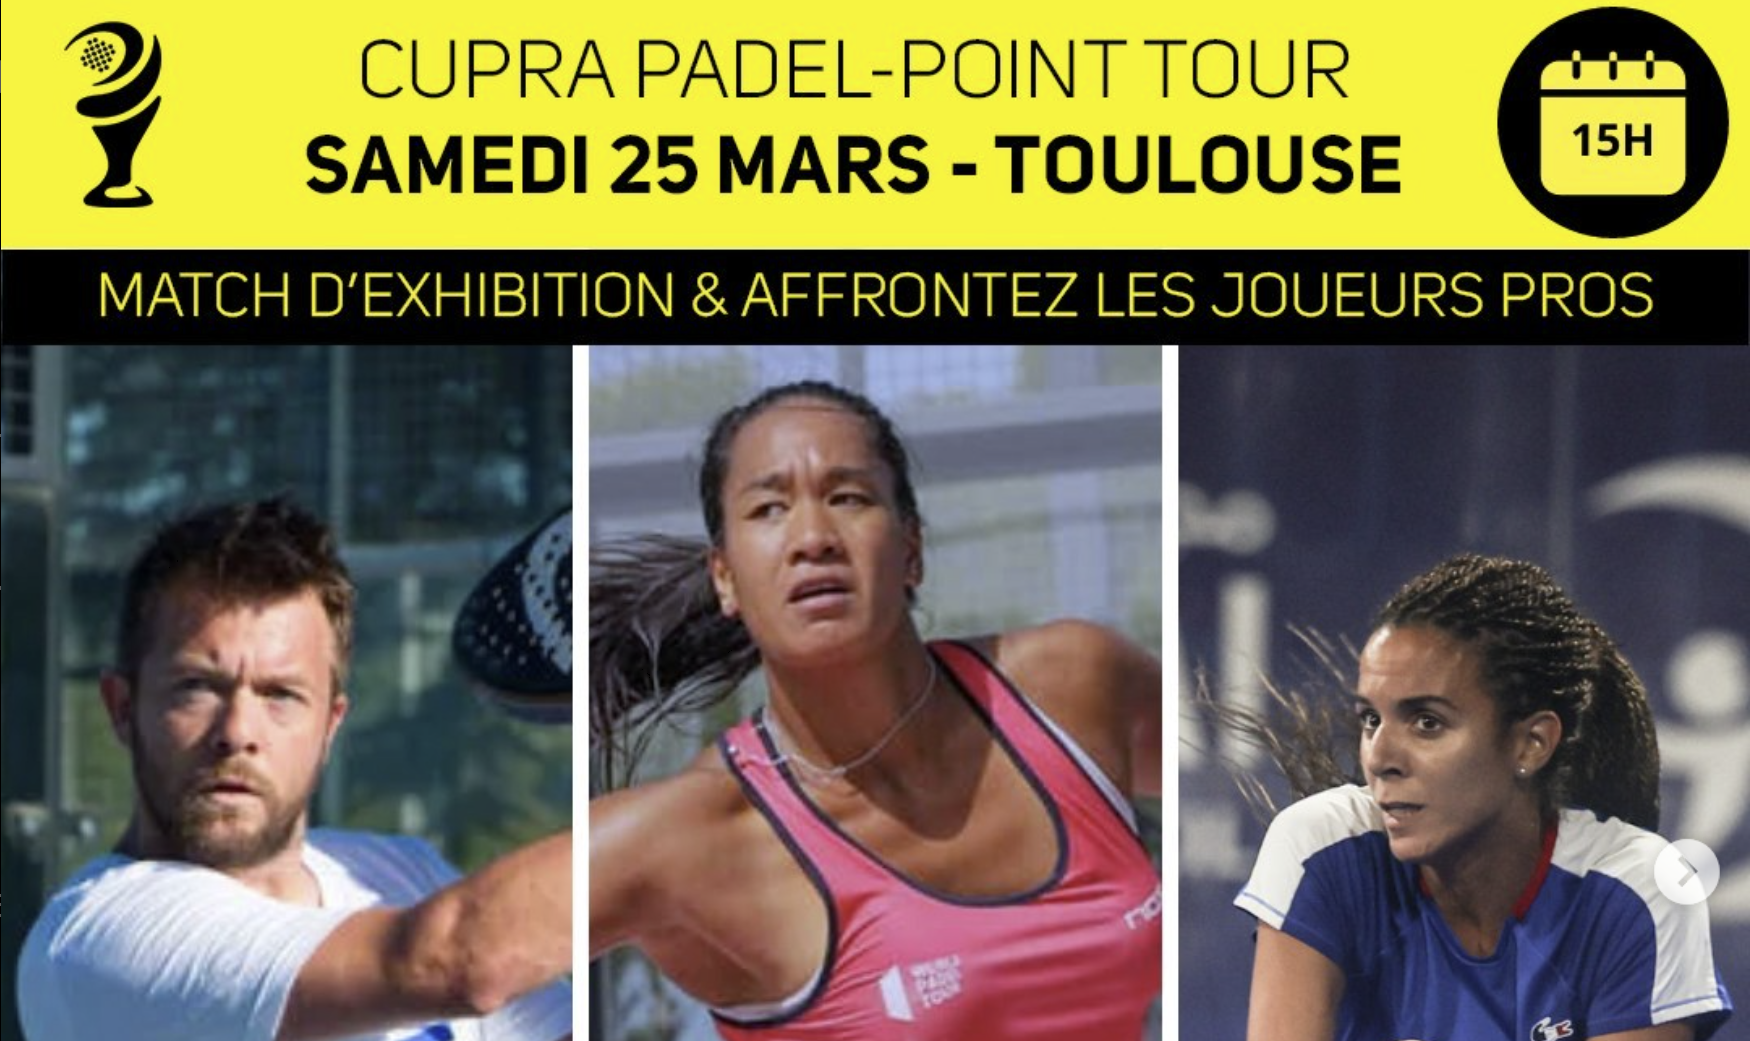 Cupra Padel-Point Tour gå av kl 4Padel Toulouse